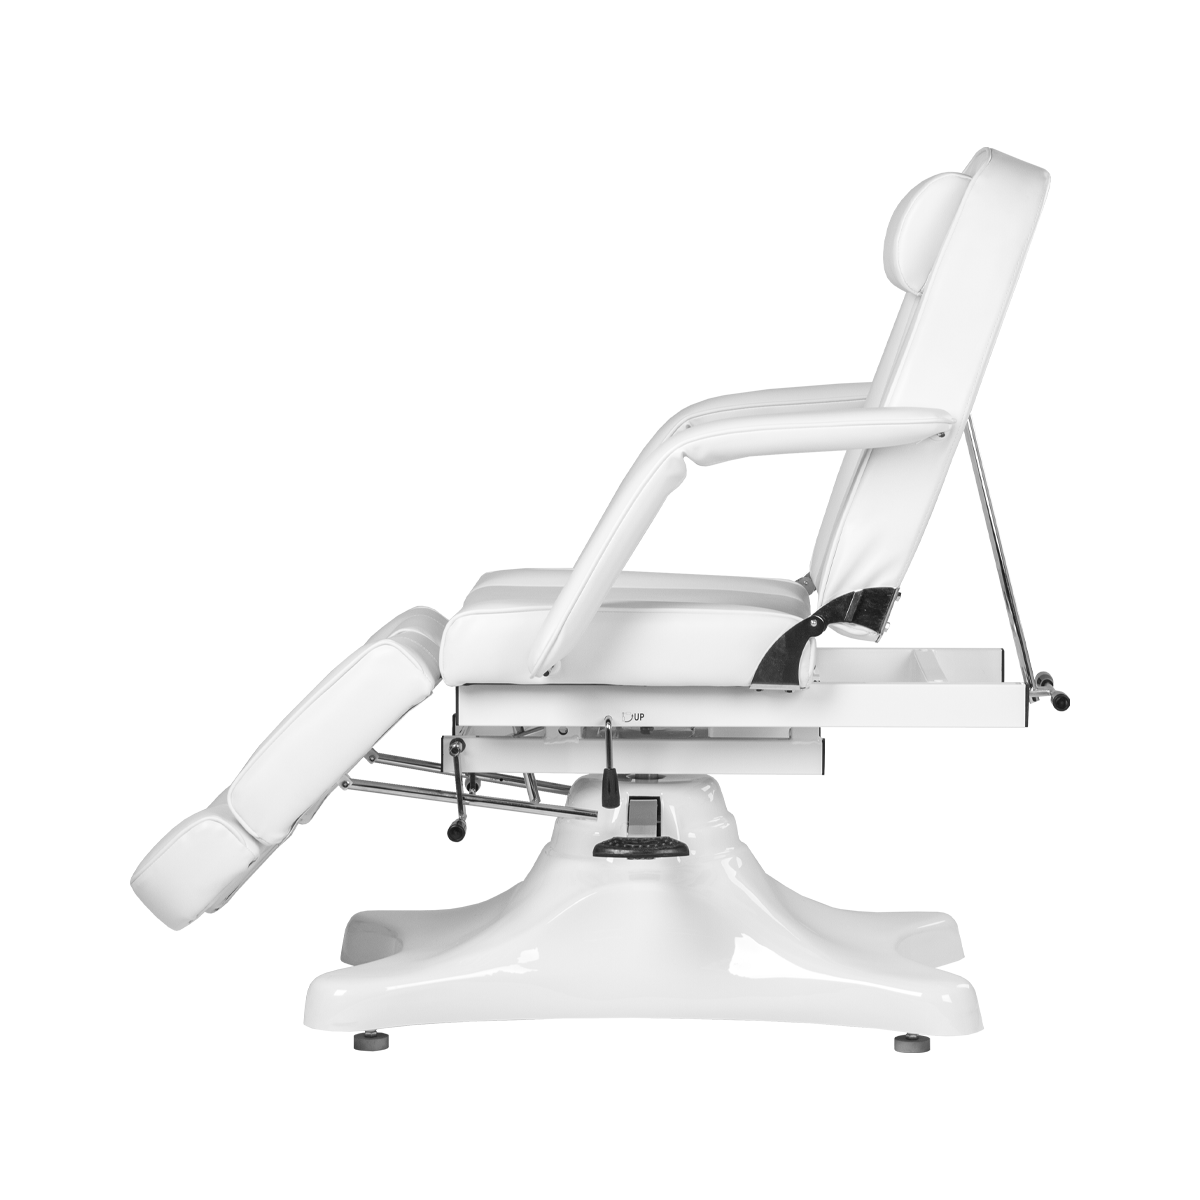 Педикюрное кресло МД-823А, гидравлика - 9 